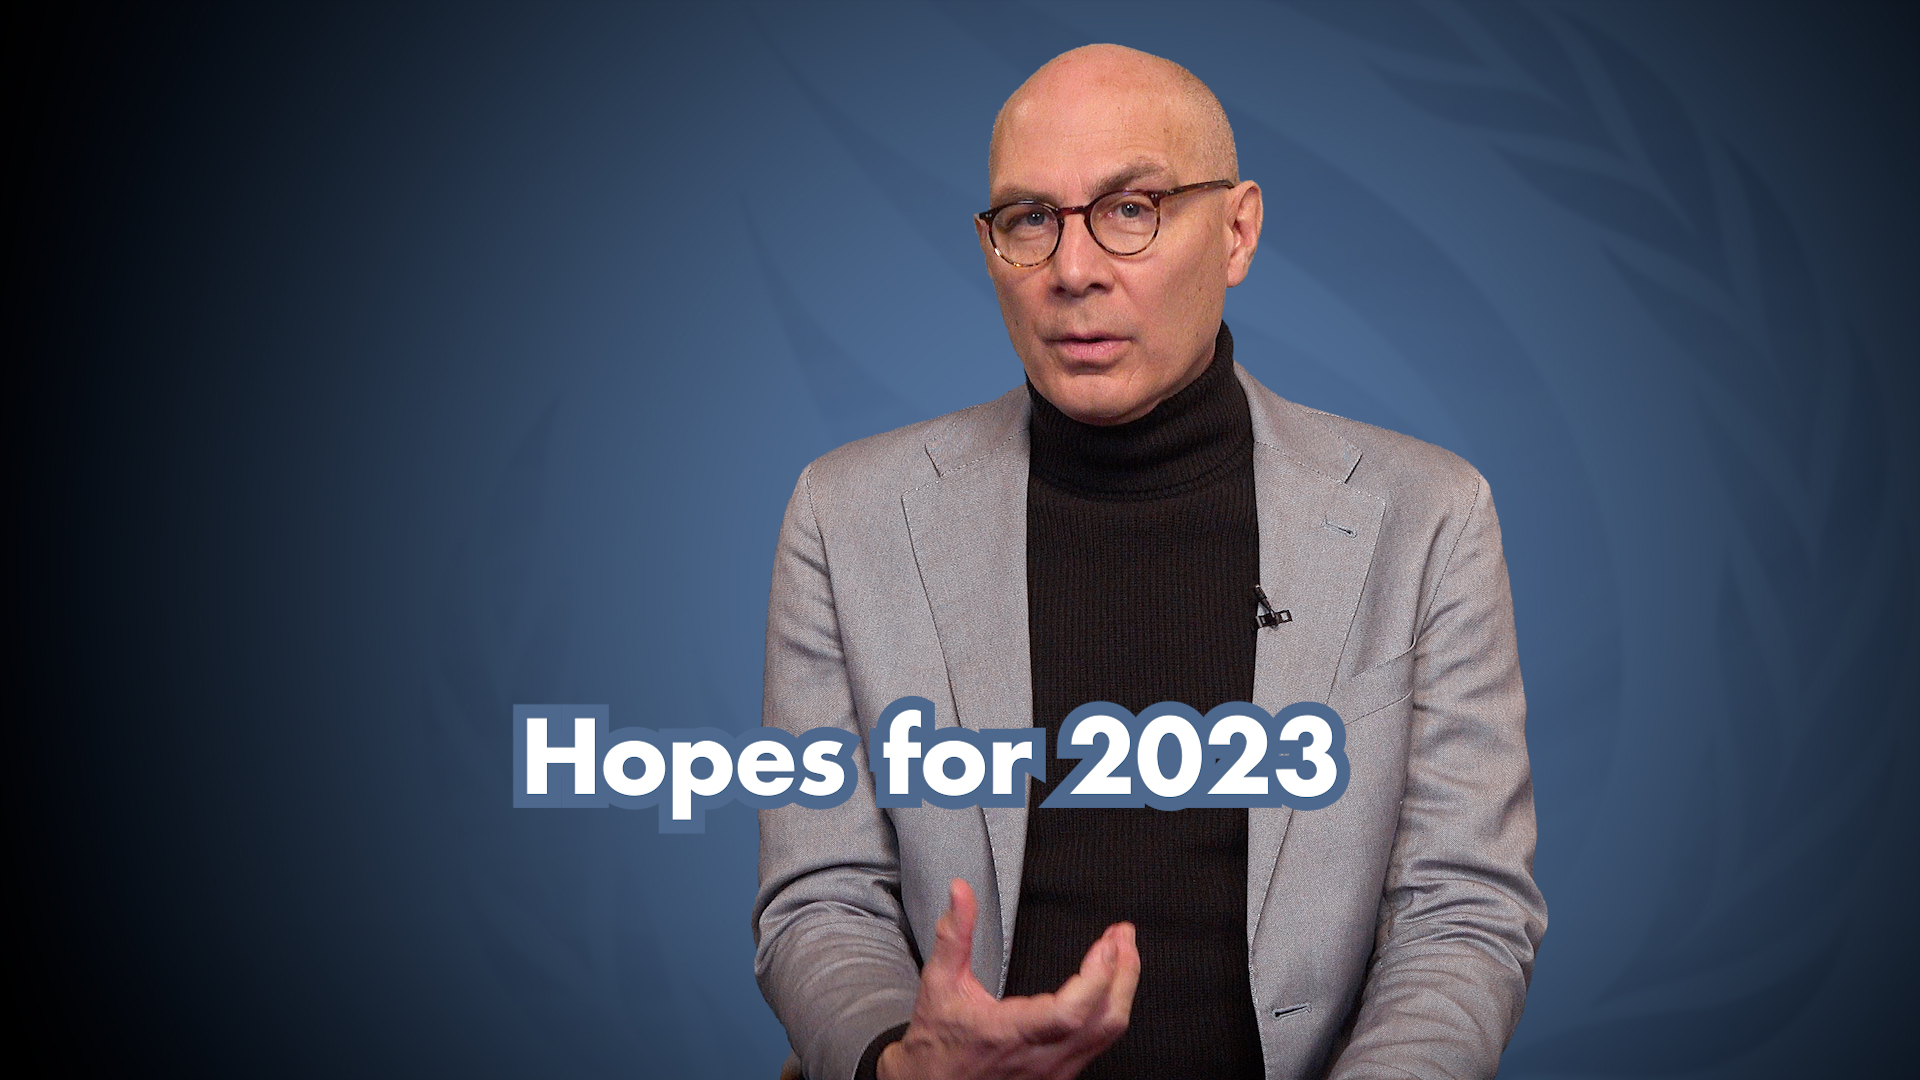 Capture d'écran de la déclaration vidéo : Espoirs pour 2023